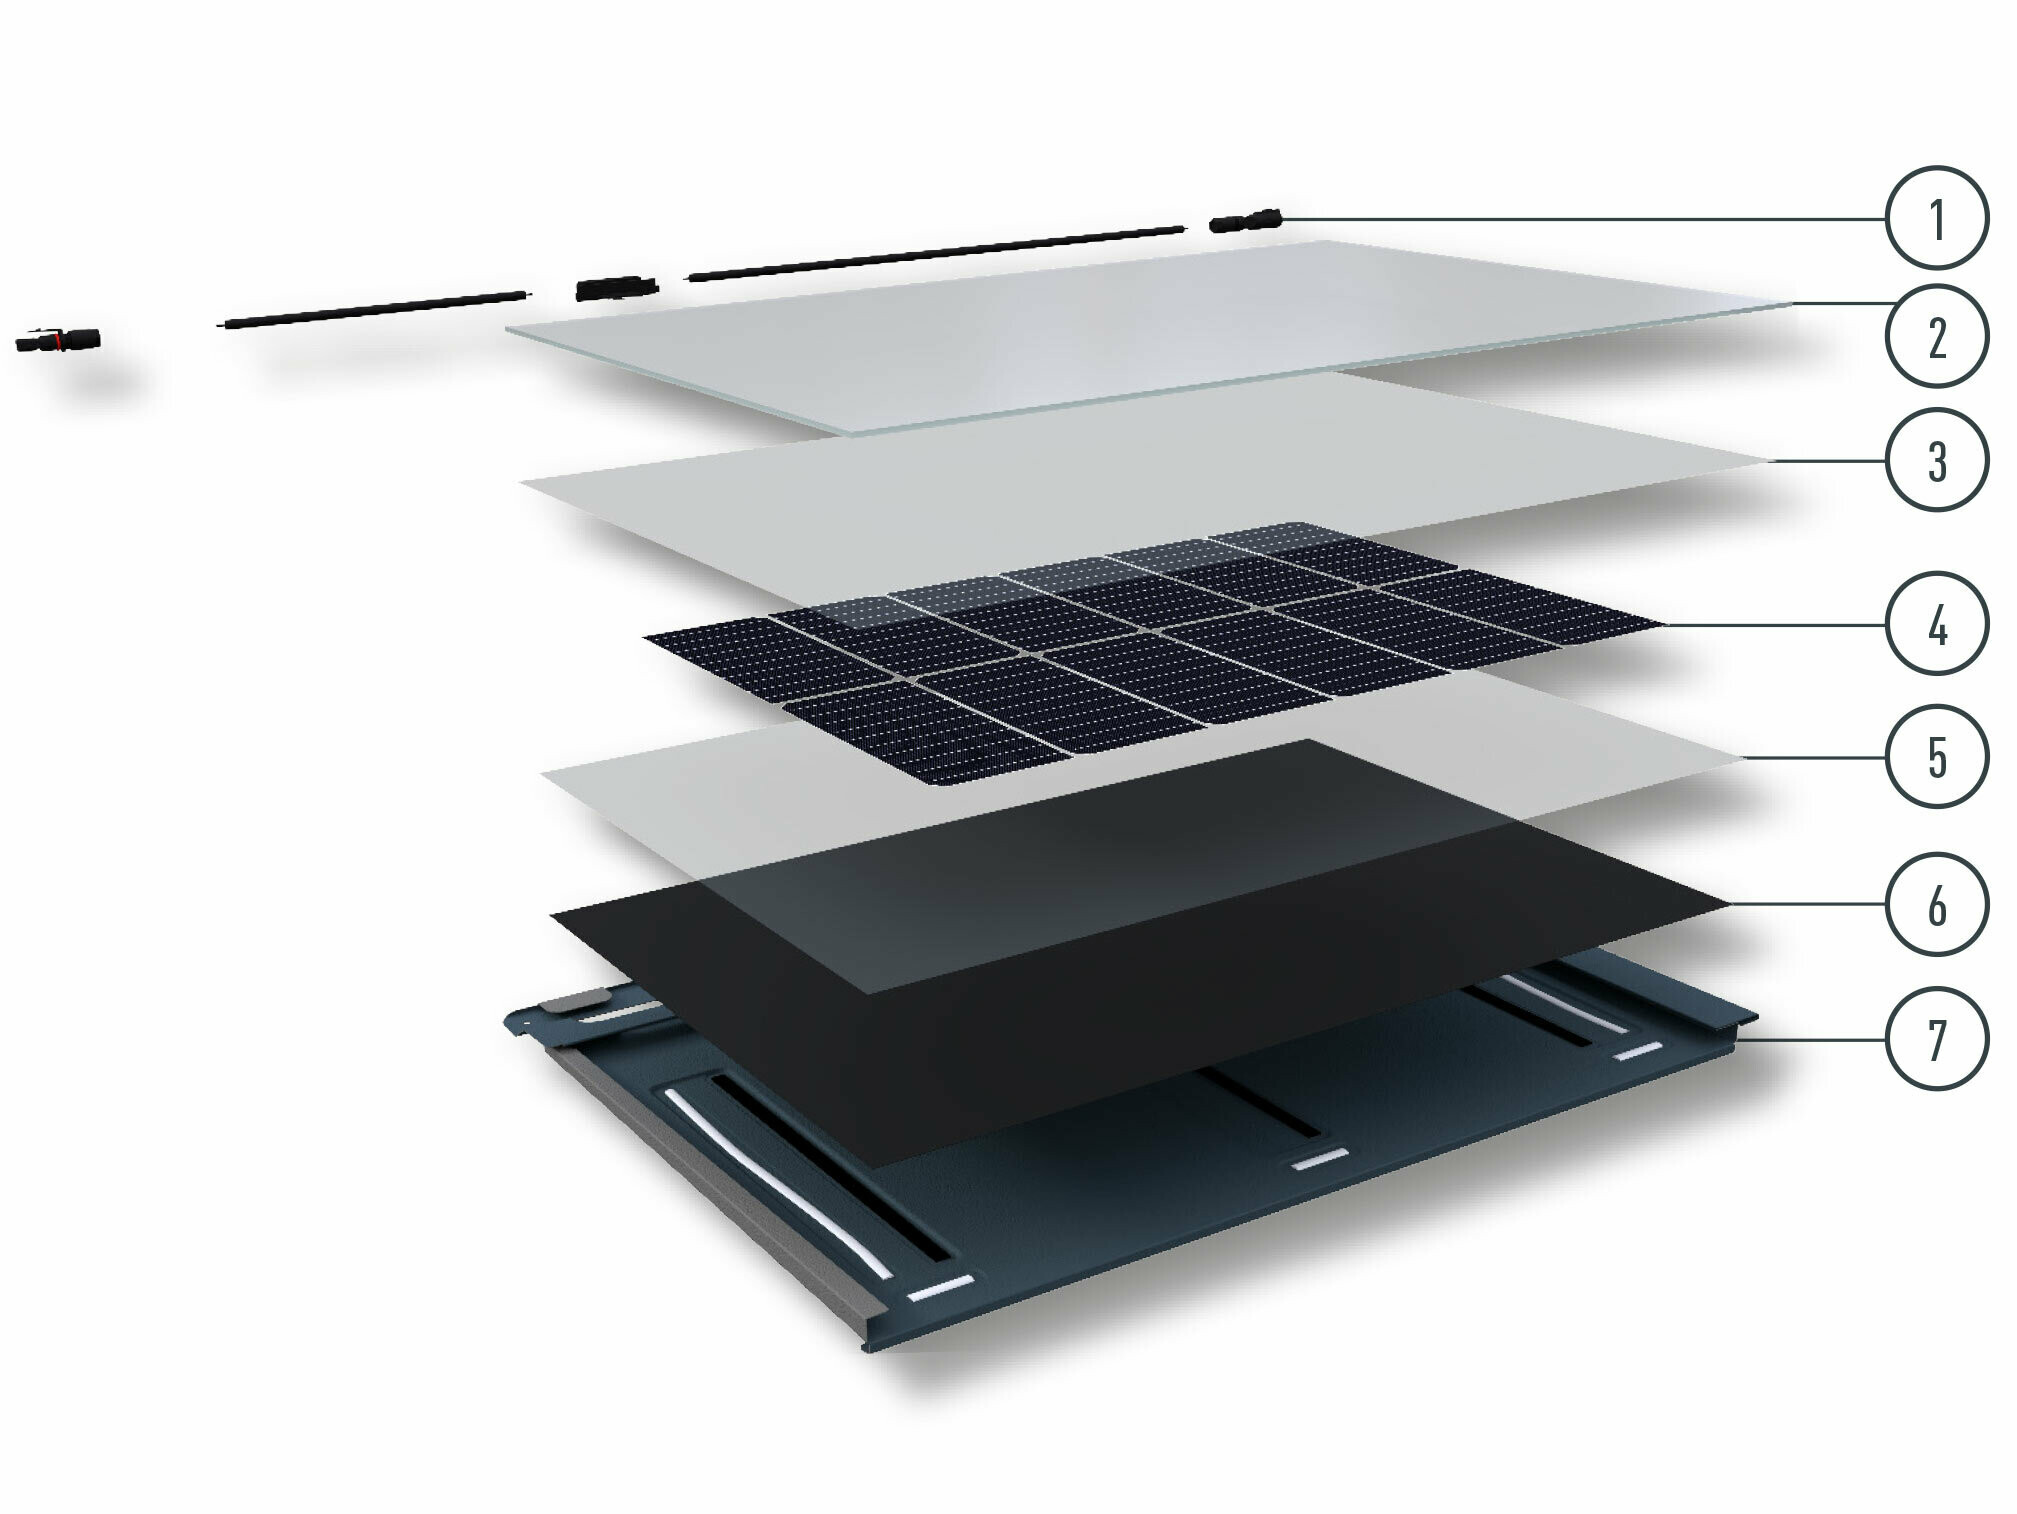 Posamezne plasti solarne strešne plošče PREFA s fotonapetostnim vtičem, prizmatičnim solarnim steklom, materialom za kapsuliranje, fotonapetostno celico, materialom za kapsuliranje, folijo na hrbtni strani in aluminijasto strešno ploščo